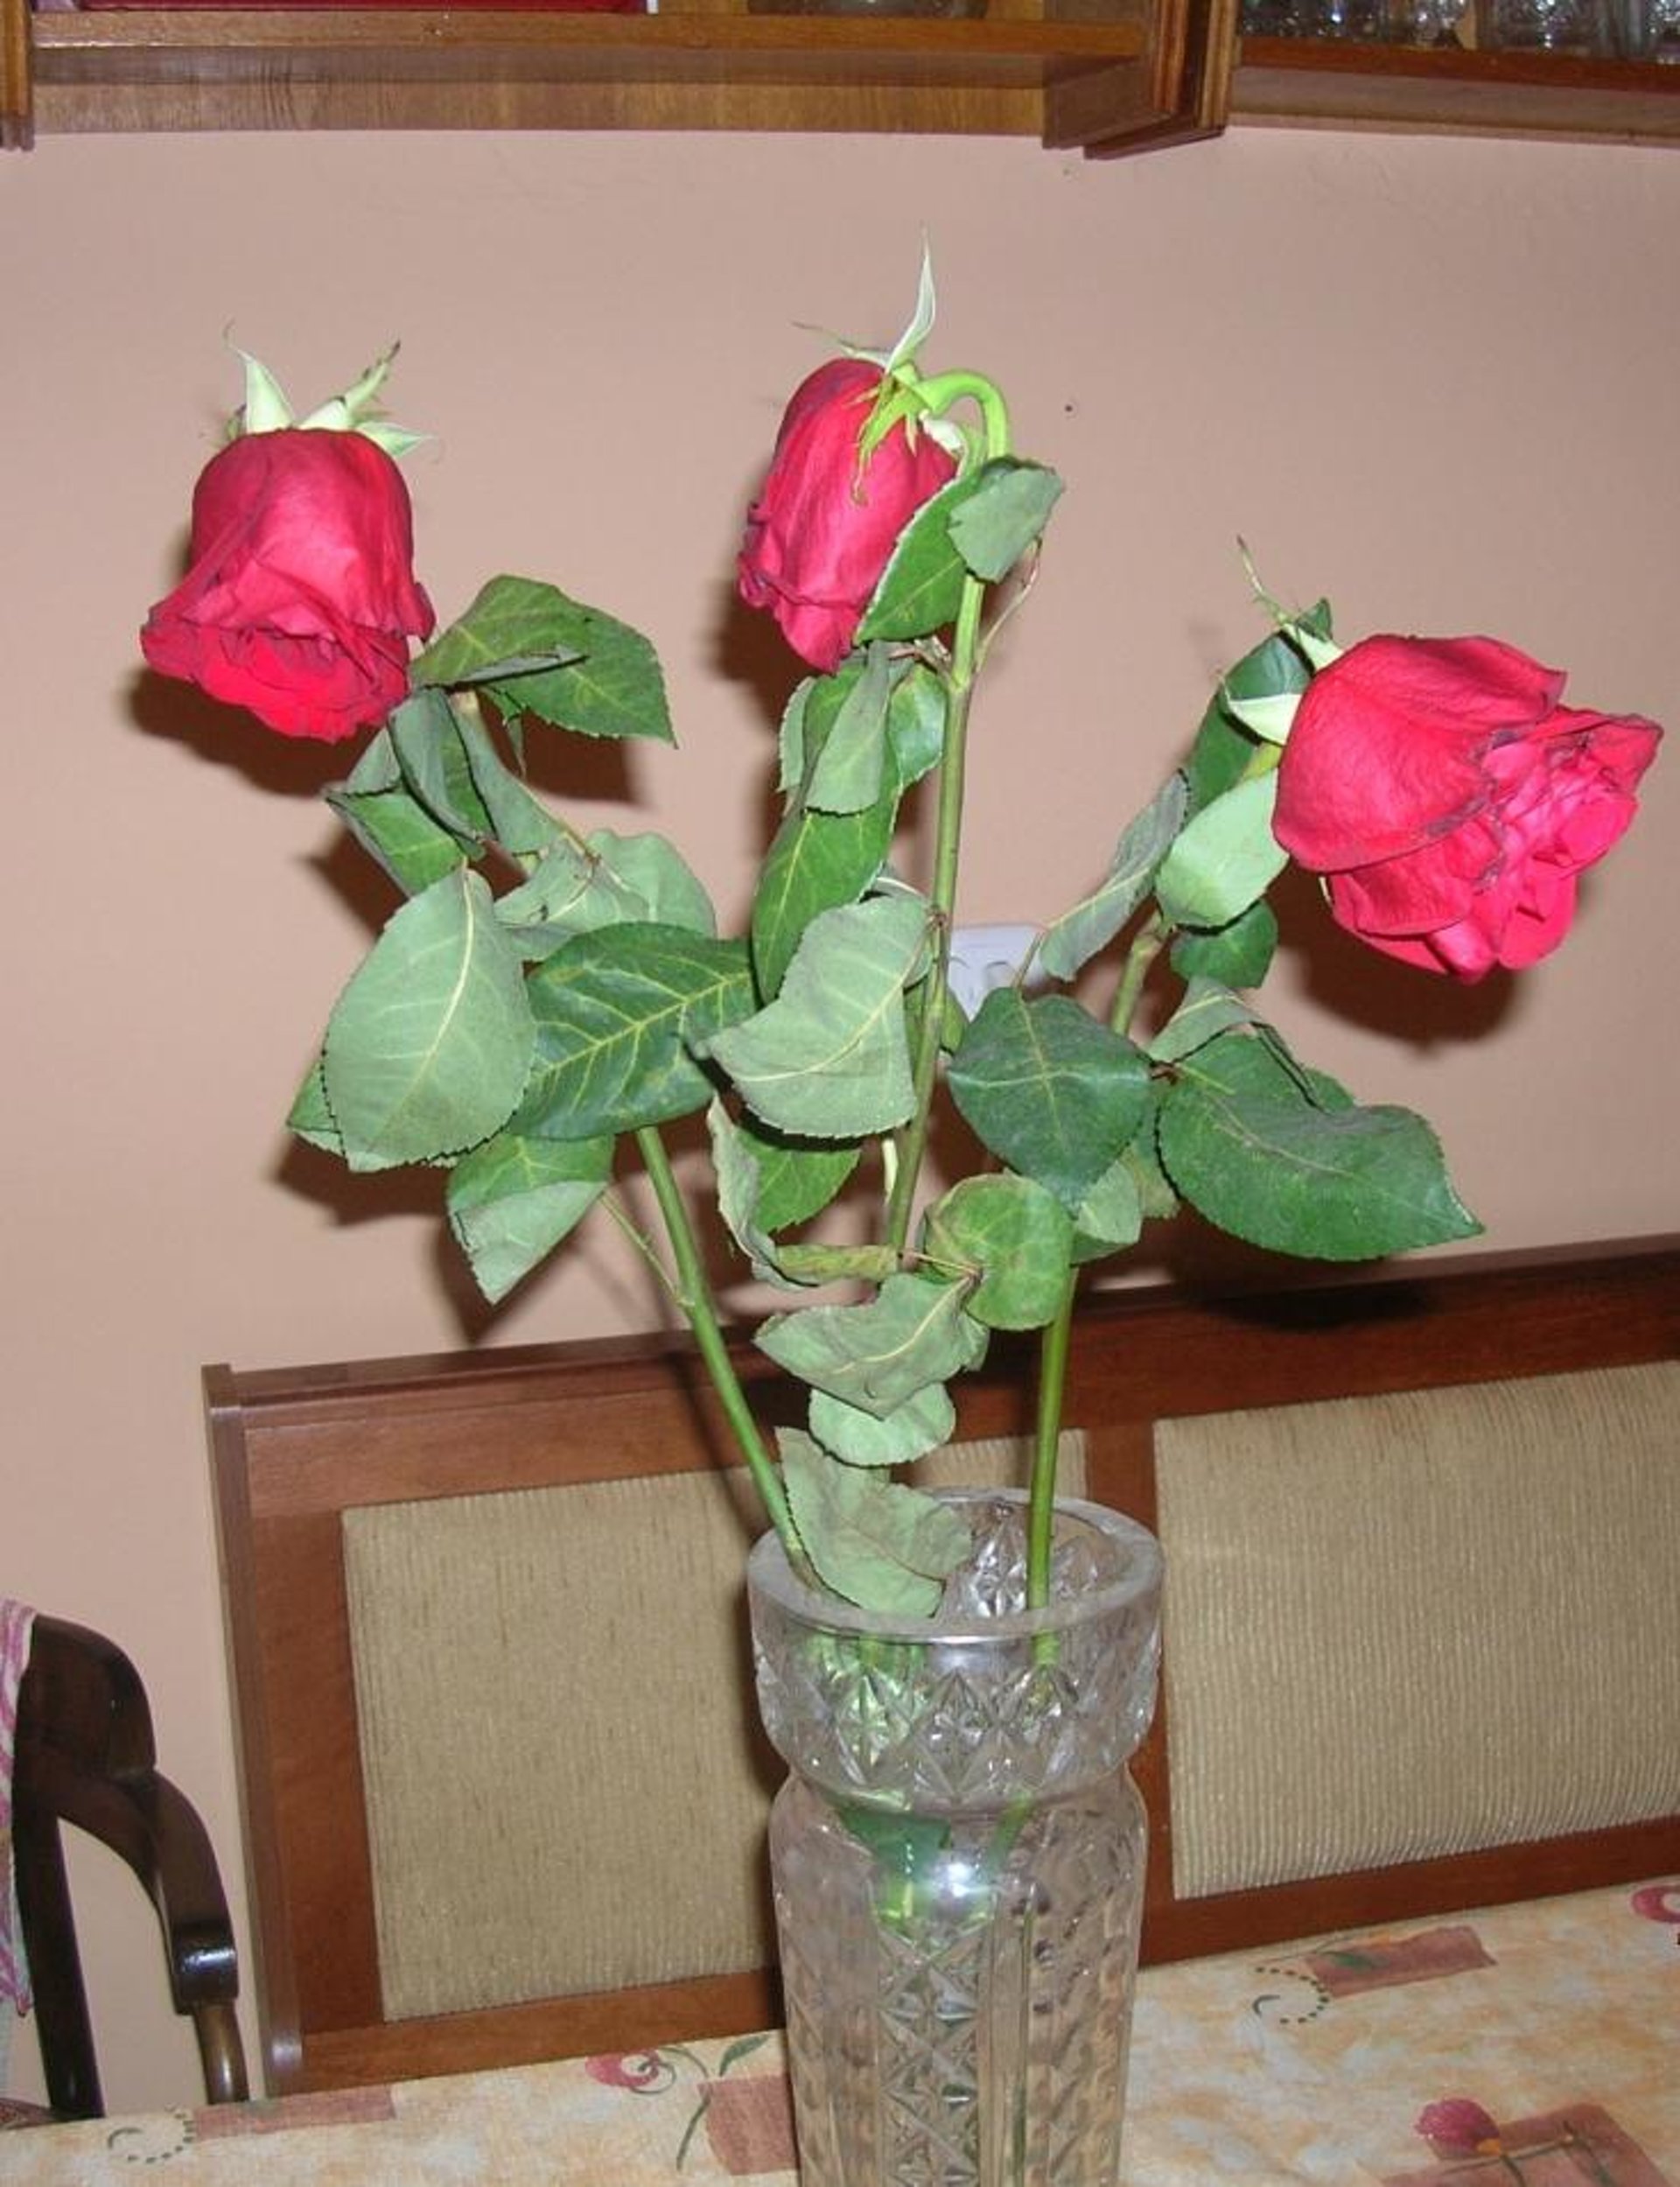 Как сохранить свежие розы в вазе